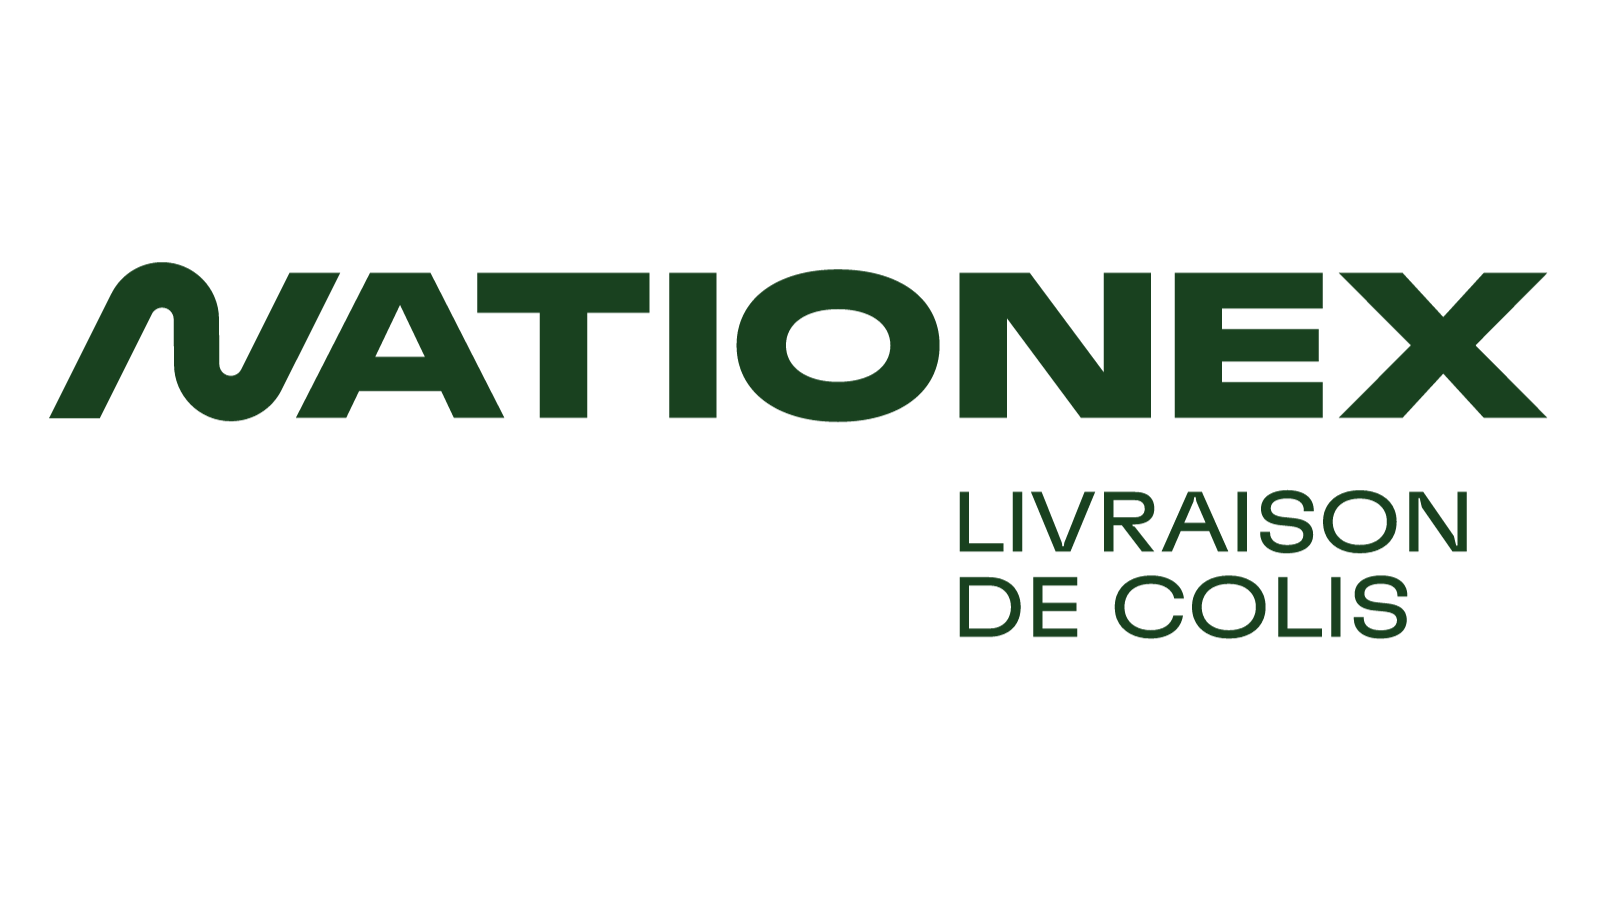 Nationex logo